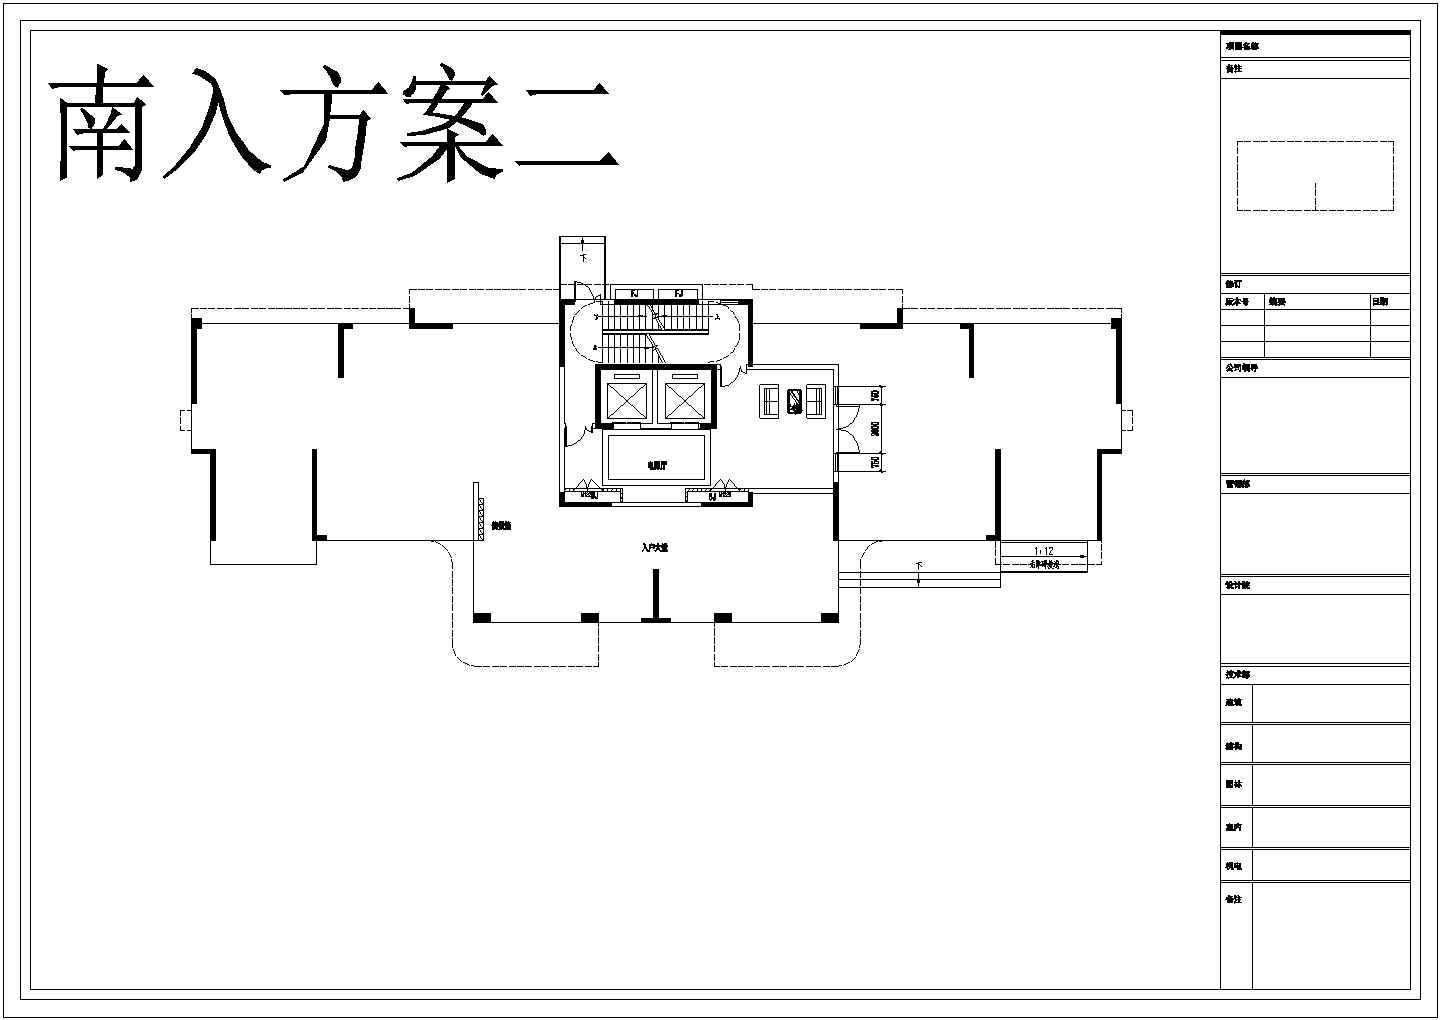 某城建公寓住宅建筑标准化户型设计施工CAD图纸